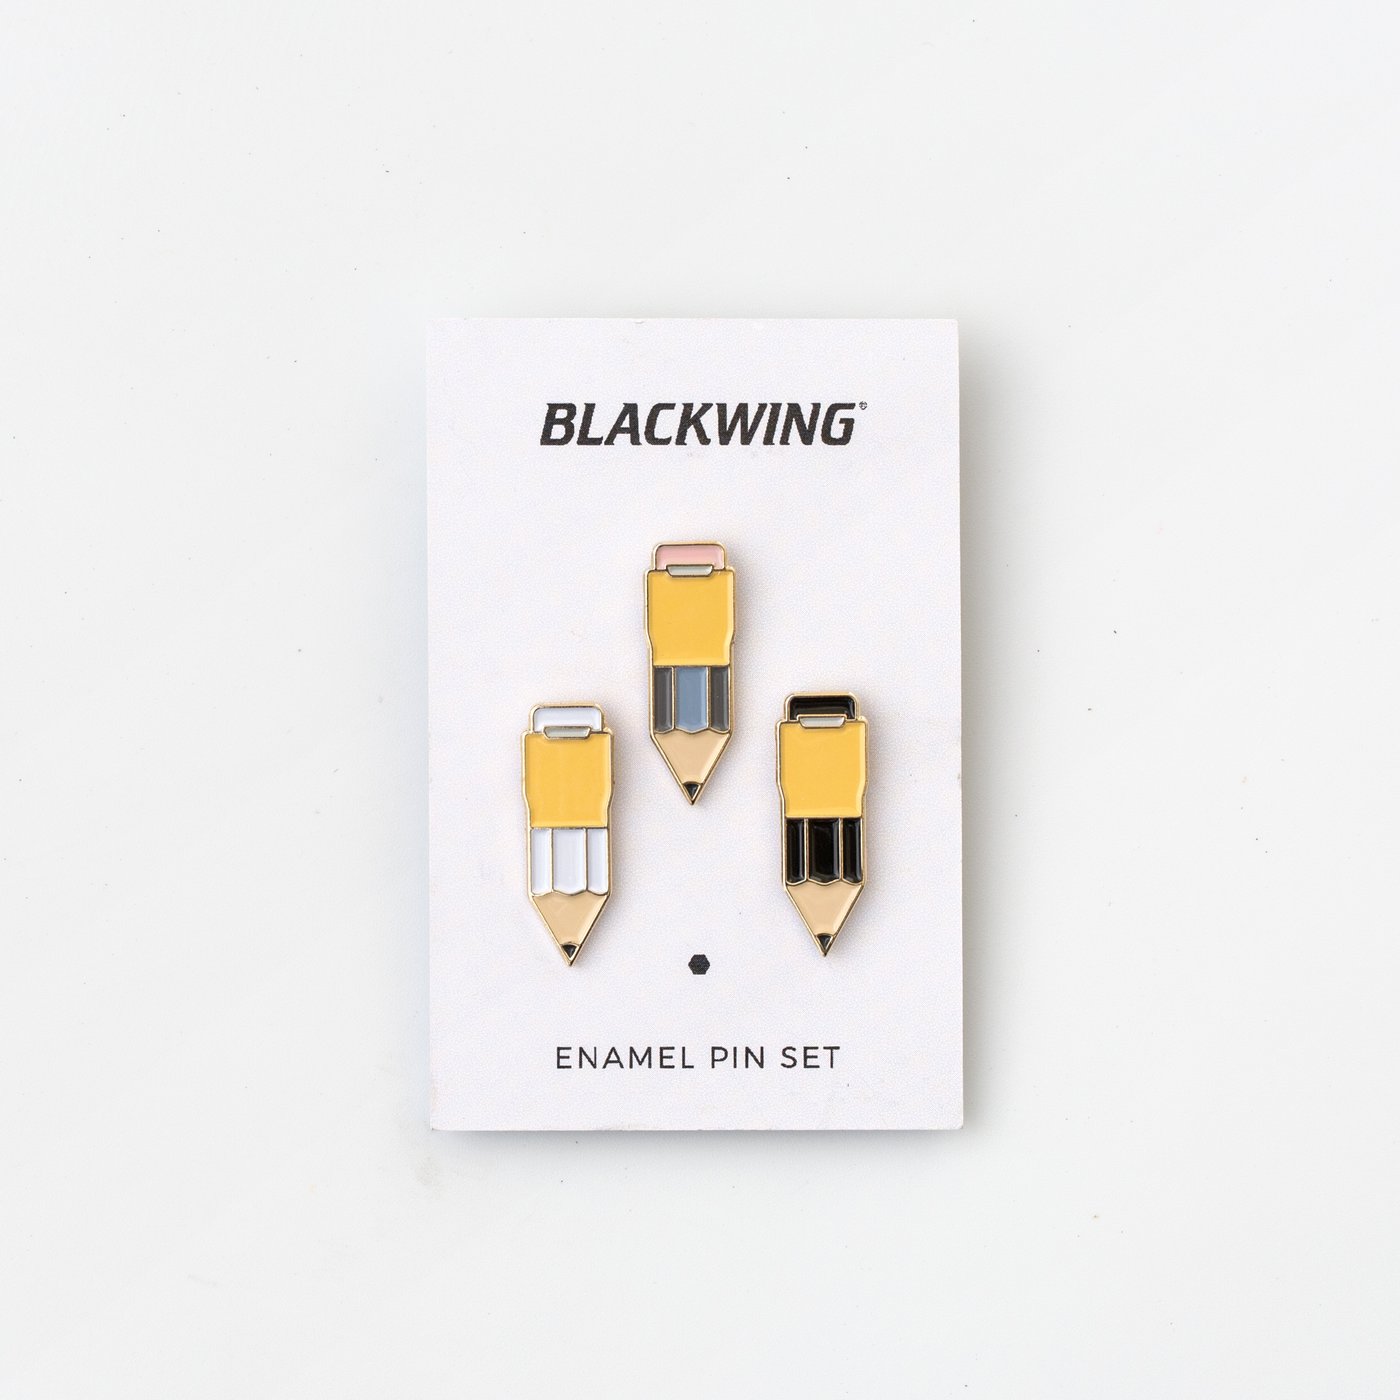 Blackwing Enamel Pin Set